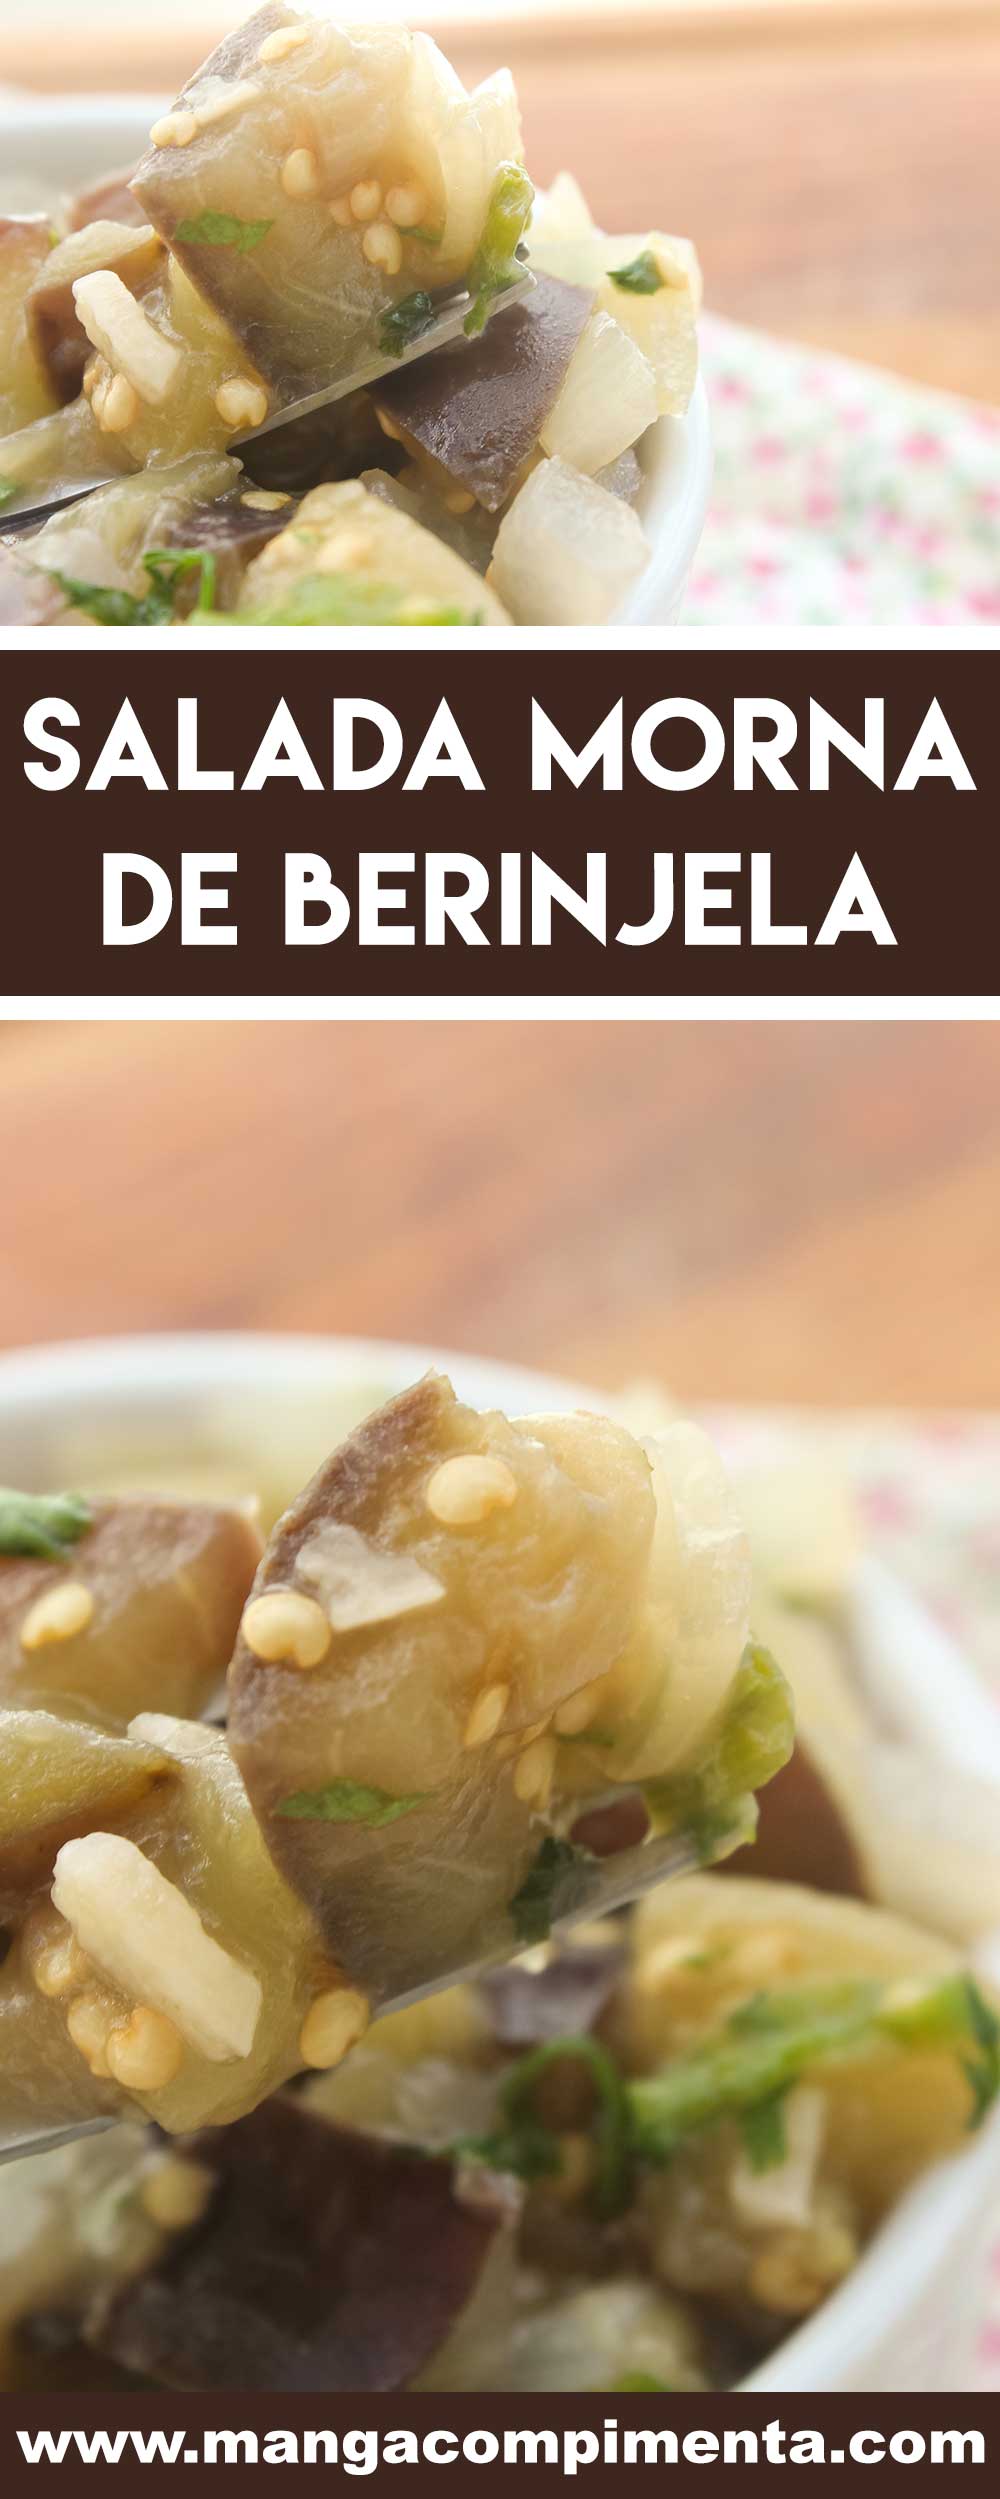 Receita de Salada Morna de Berinjela - um prato delicioso e nutritivo para o almoço ou jantar da semana.Receita de Salada Morna de Berinjela - um prato delicioso e nutritivo para o almoço ou jantar da semana.